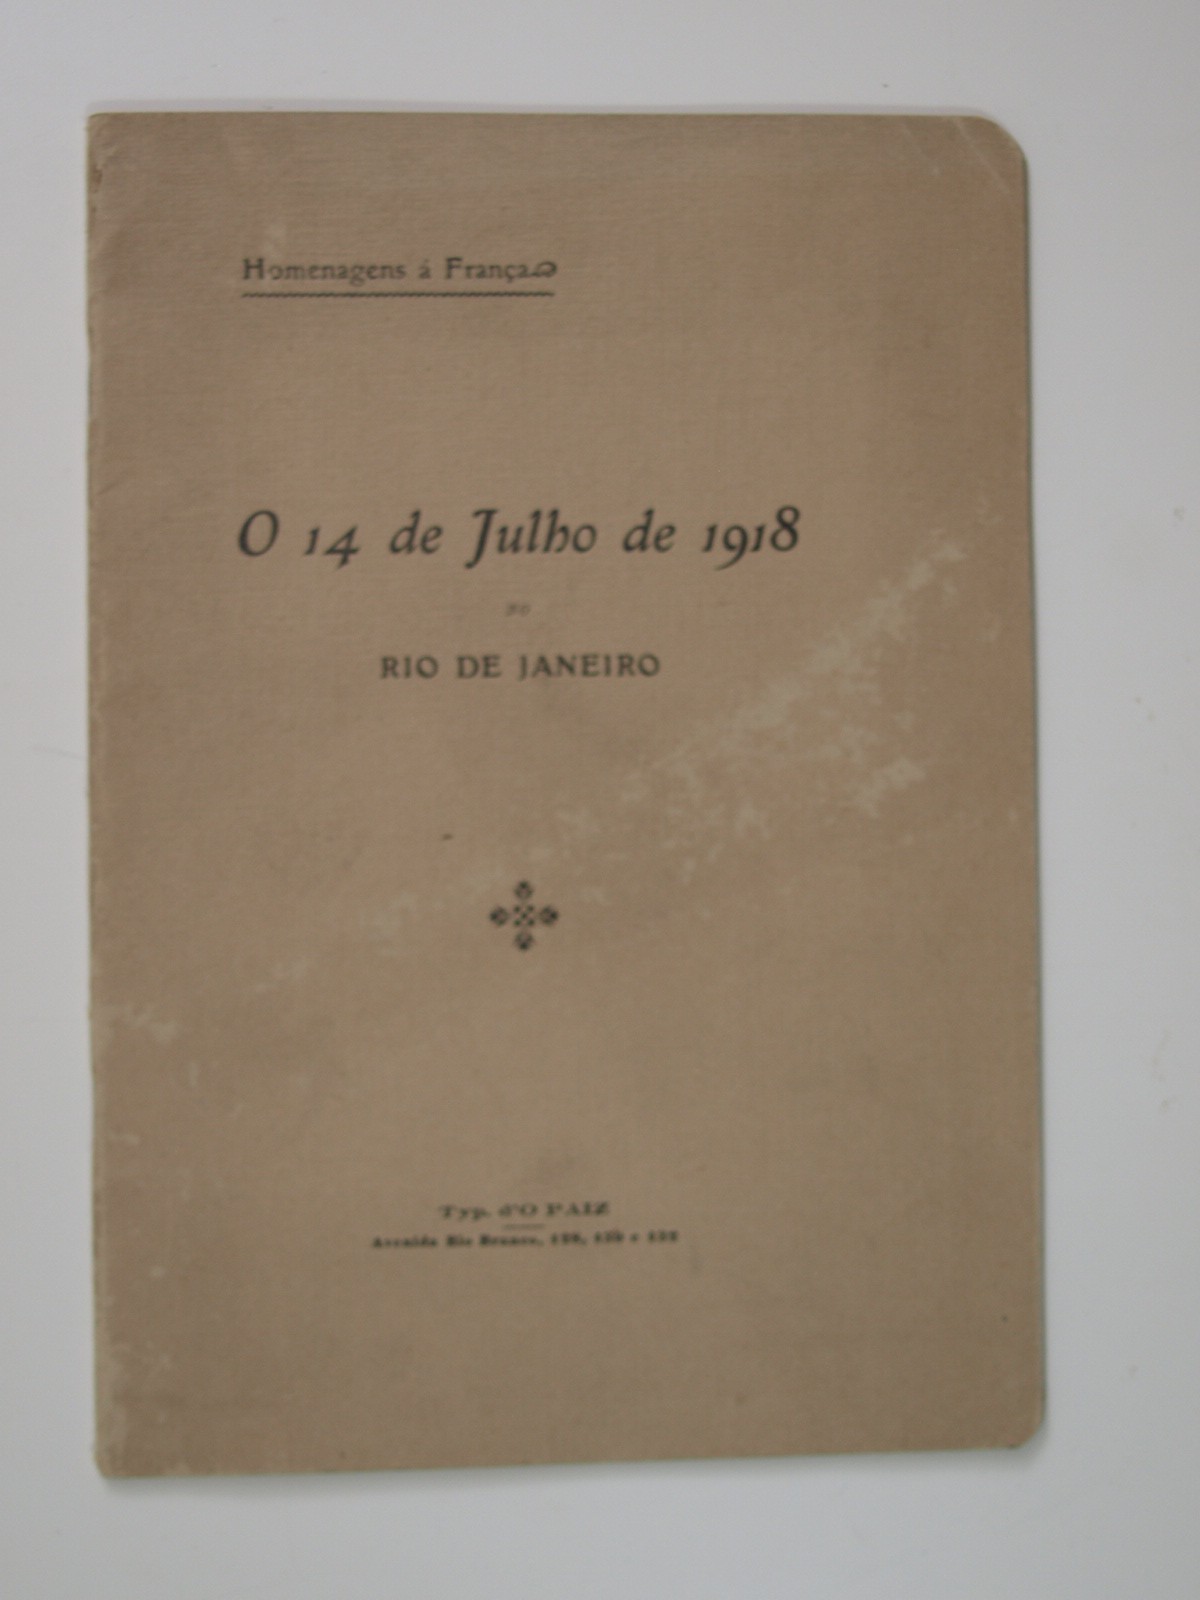 Claudel P : Homenagens à França. O 14 de Julho de 1918 No Rio de Janeiro. Envoi